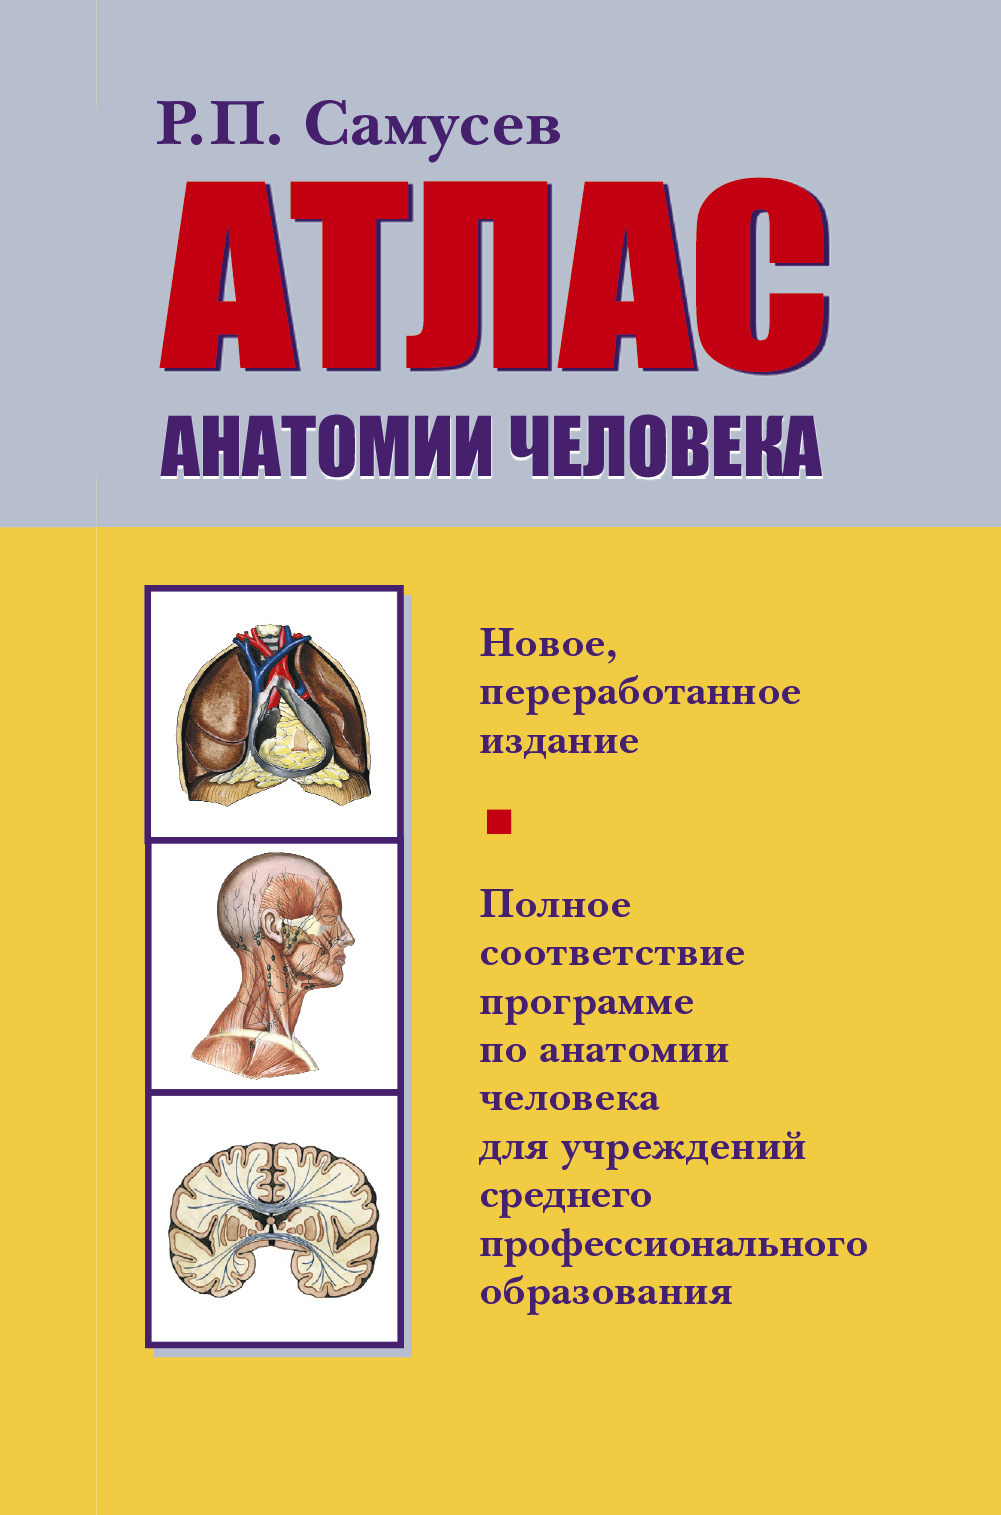 Атлас анатомии человека | Самусев Рудольф Павлович